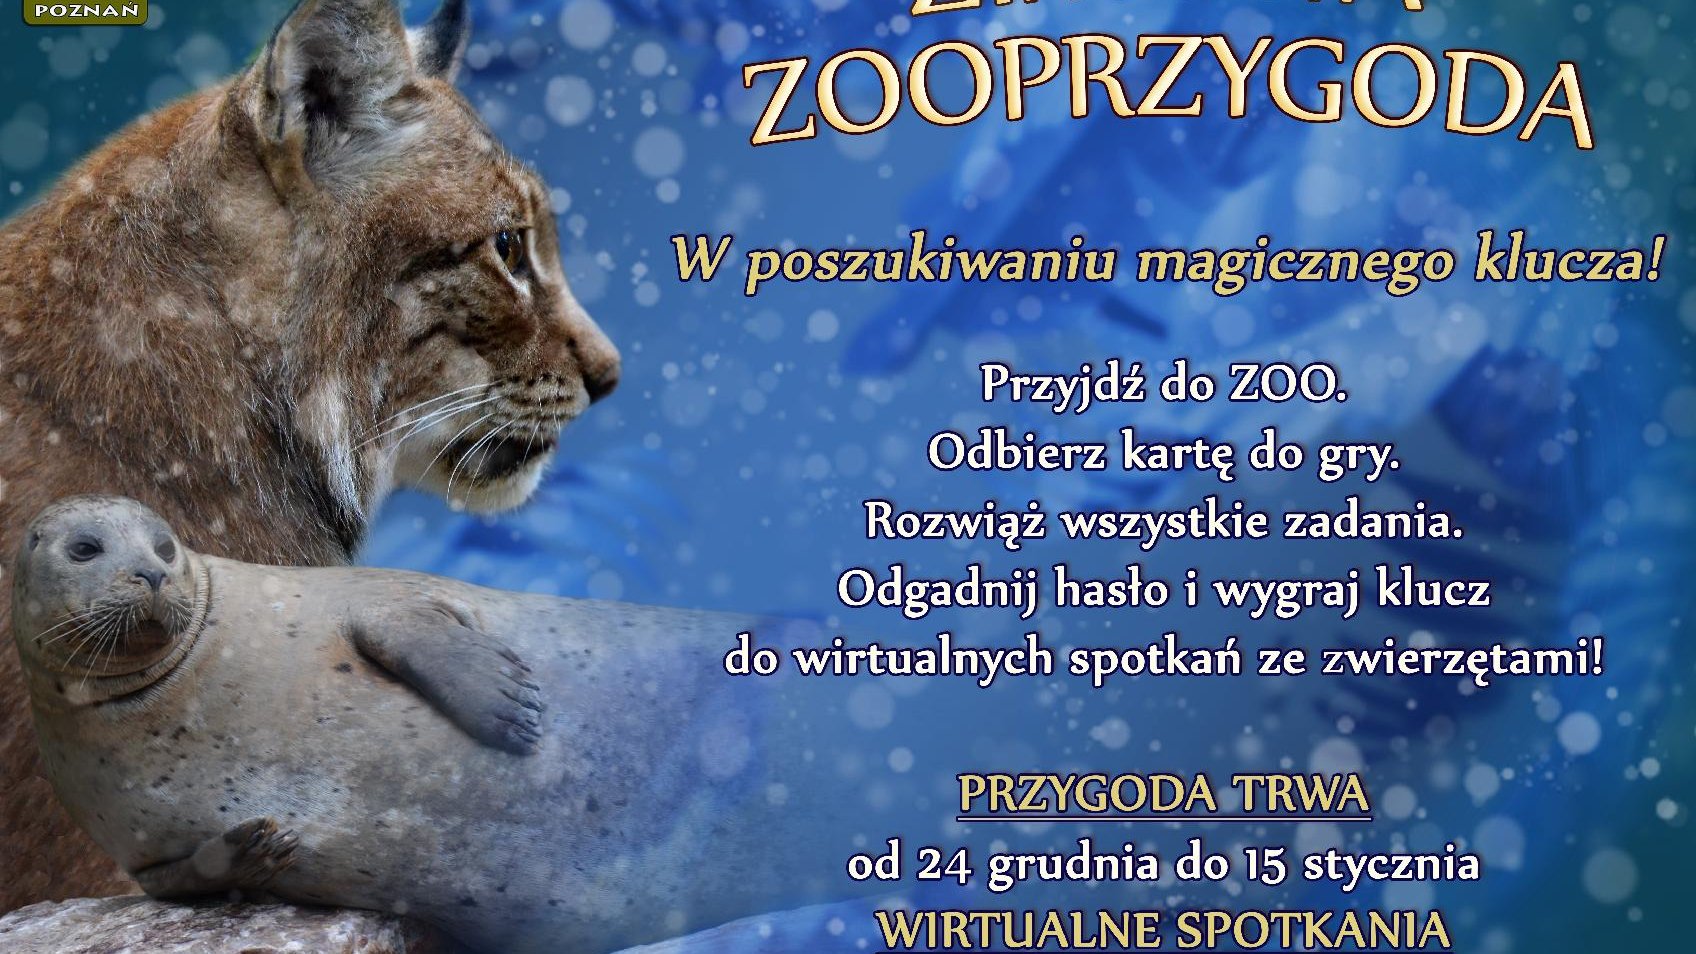 Plakat zapowiadający zabawę, przygotowaną przez zoo. Oprócz informacji tekstowej znajduje się na nim zdjęcie rysia i foki.